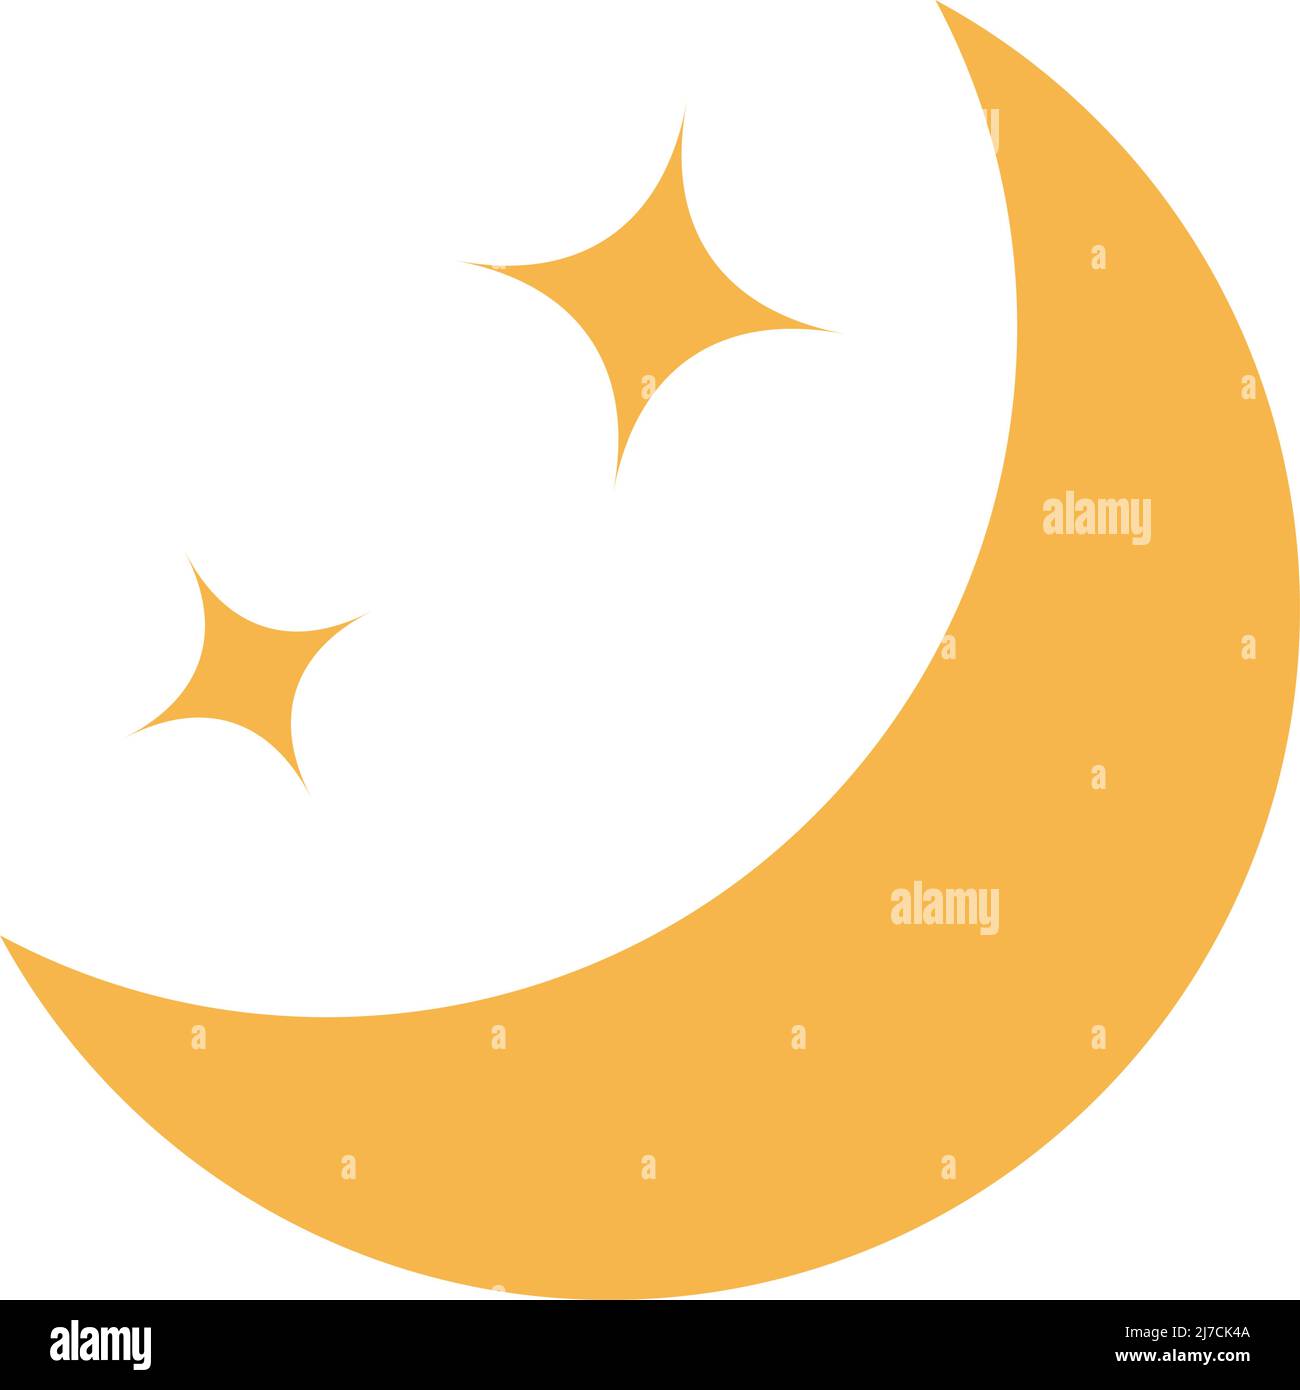 Icona Crescent moon e glitter. Vettore modificabile. Illustrazione Vettoriale